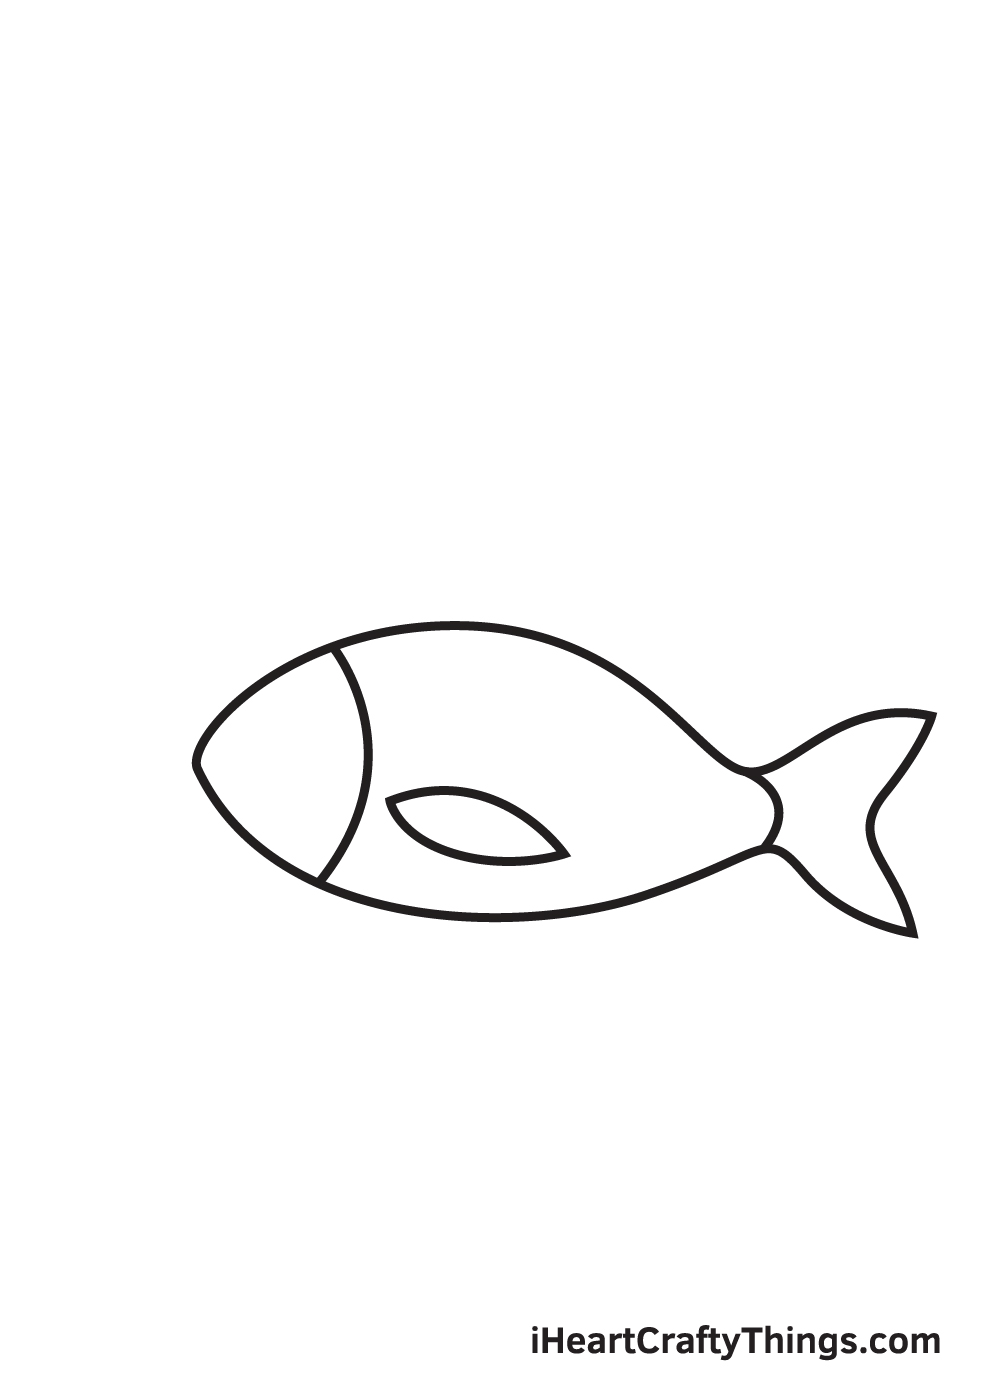 fish drawing - step 4